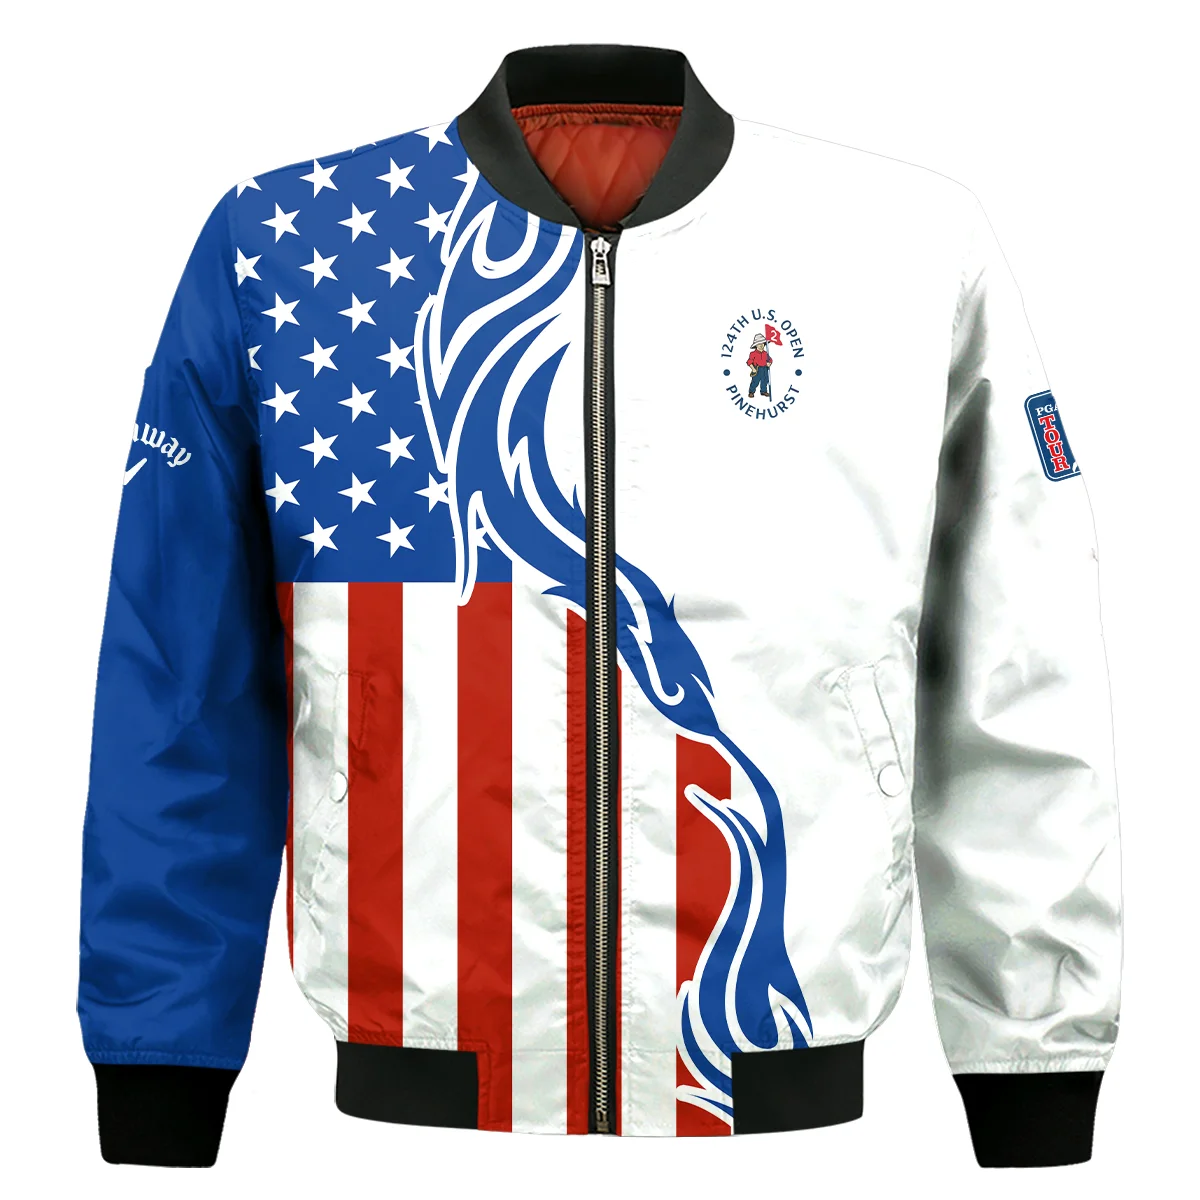 Golf Sport Callaway 124th U.S. Open Pinehurst Bomber Jacket USA Flag Pattern Blue White All Over Print Bomber Jacket